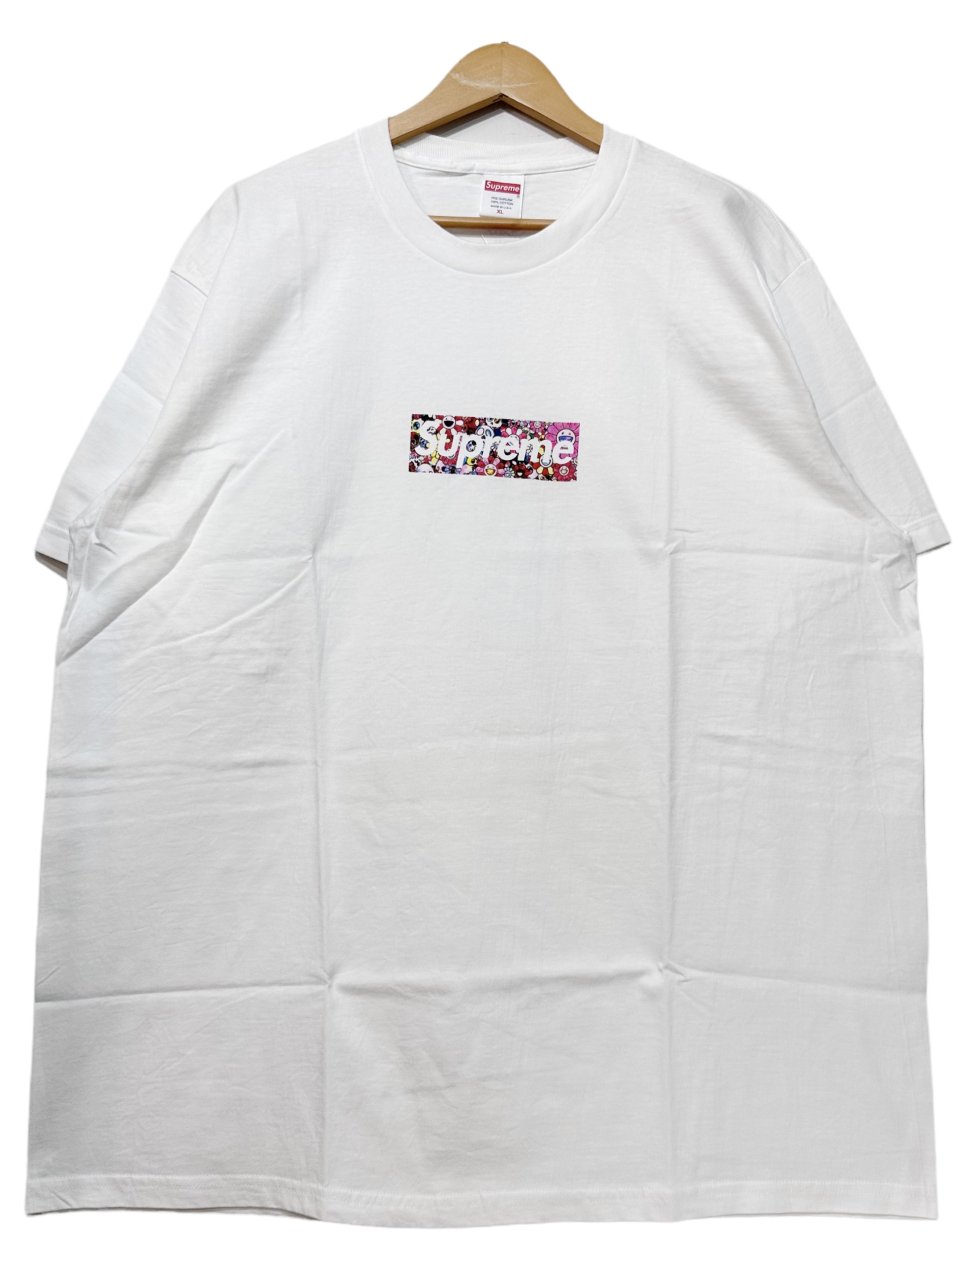 新品 20SS SUPREME × Takashi Murakami COVID-19 Relief Box Logo Tee 白 XL シュプリーム  村上隆 ボックスロゴ Tシャツ 2020春夏 - NEWJOKE ONLINE STORE